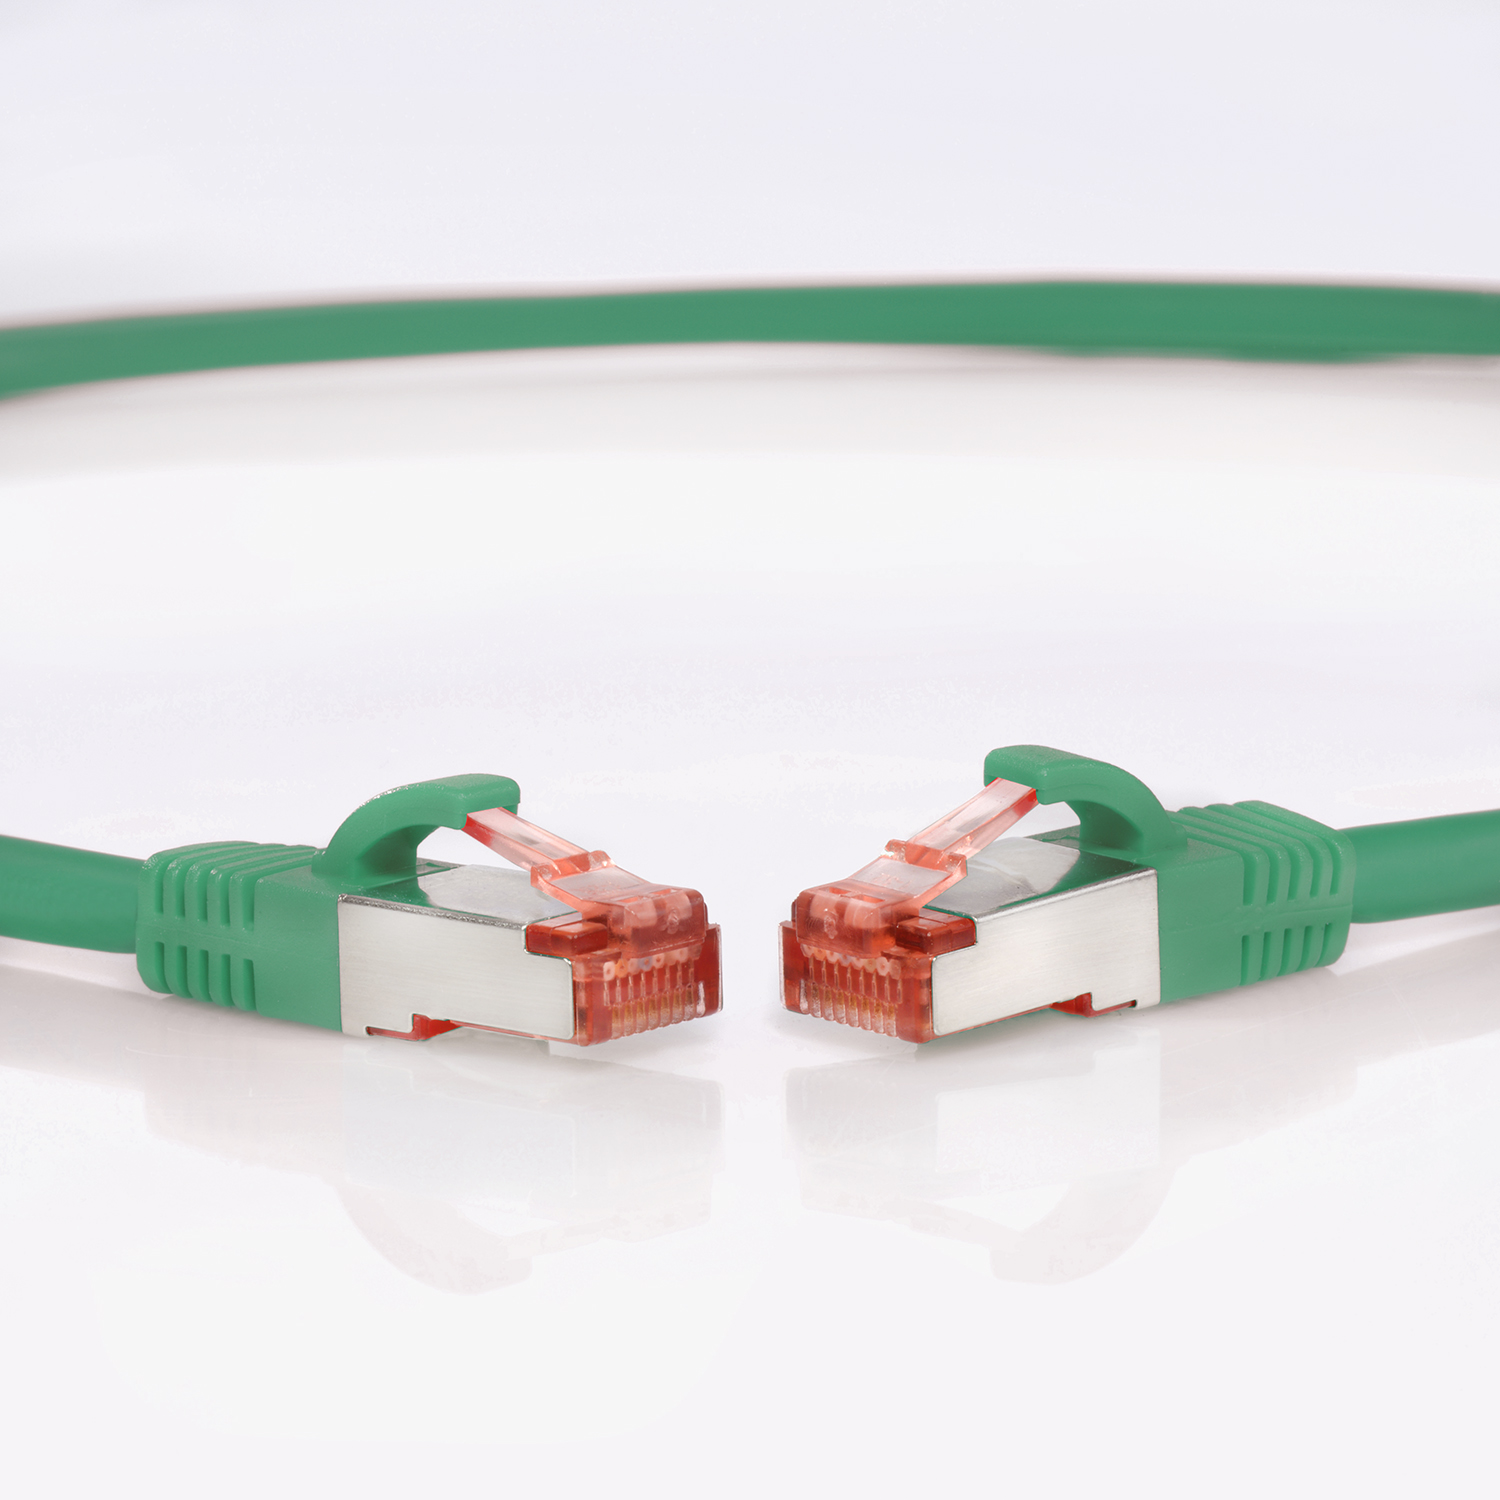 Netzwerkkabel Patchkabel grün, m S/FTP TPFNET 1000Mbit, / 2 Netzwerkkabel, Pack 2m 10er